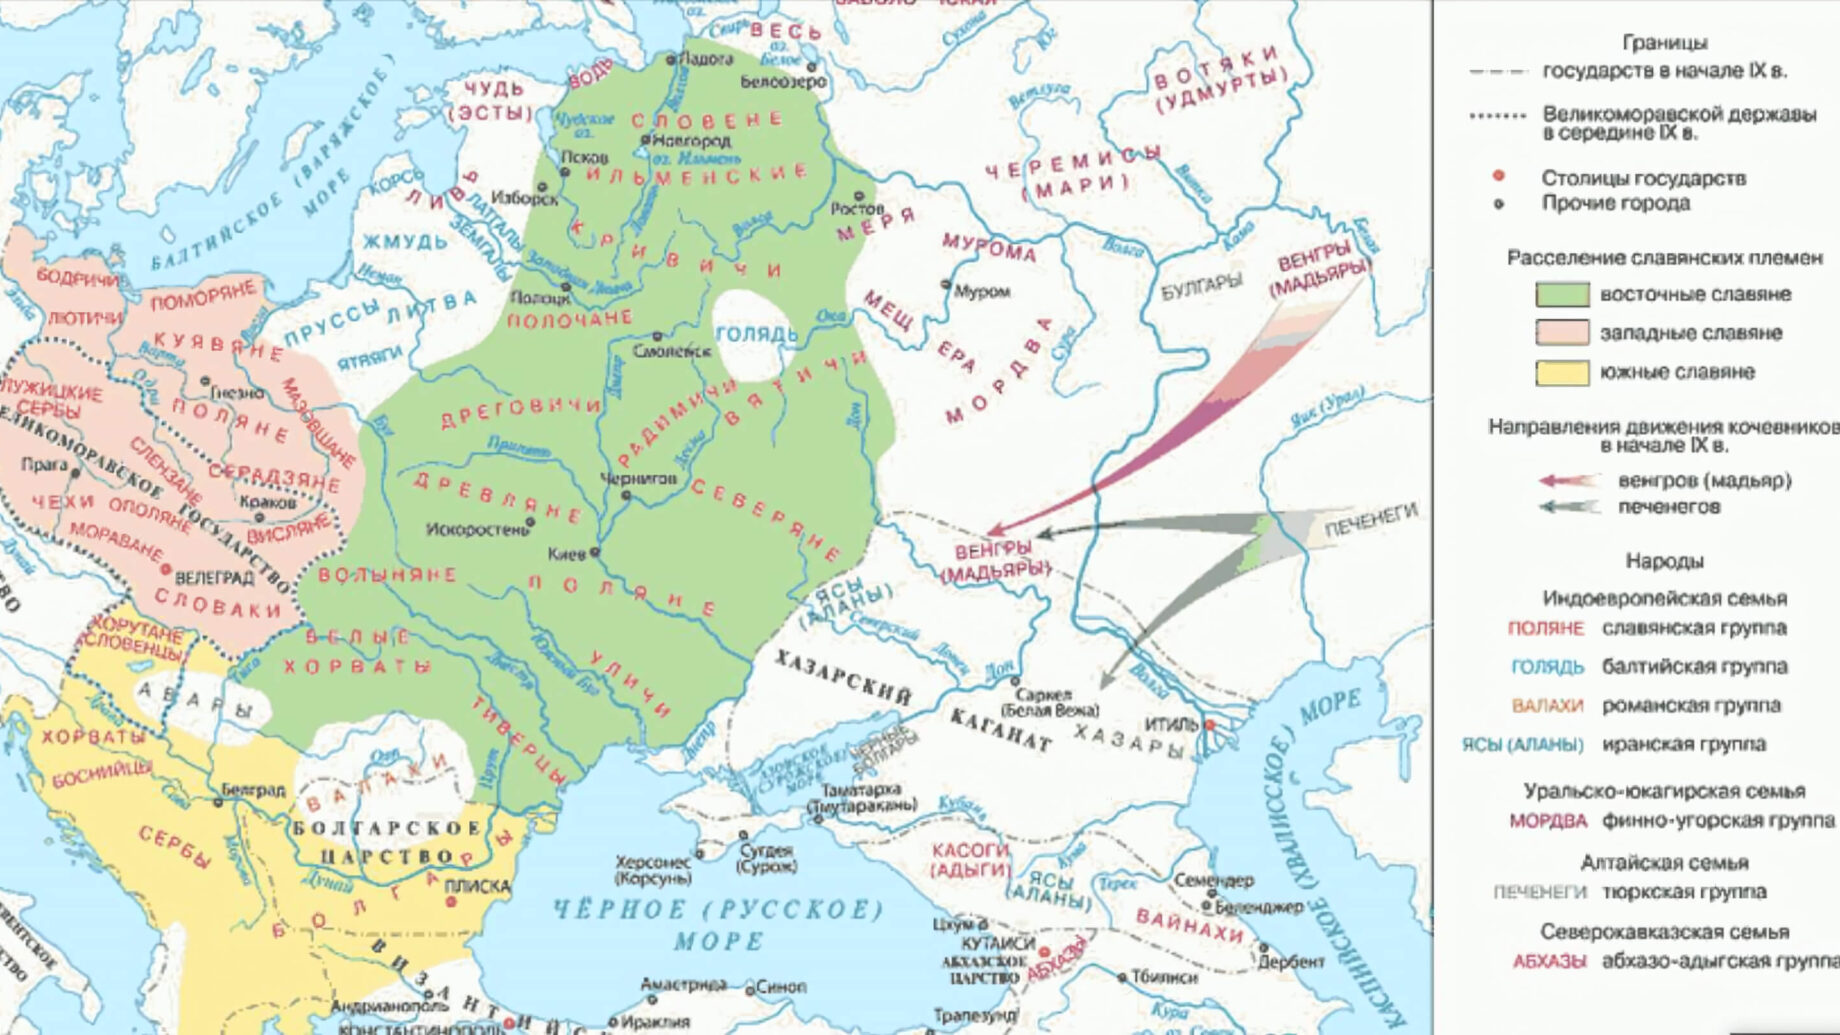 Карта расселения славянских племен